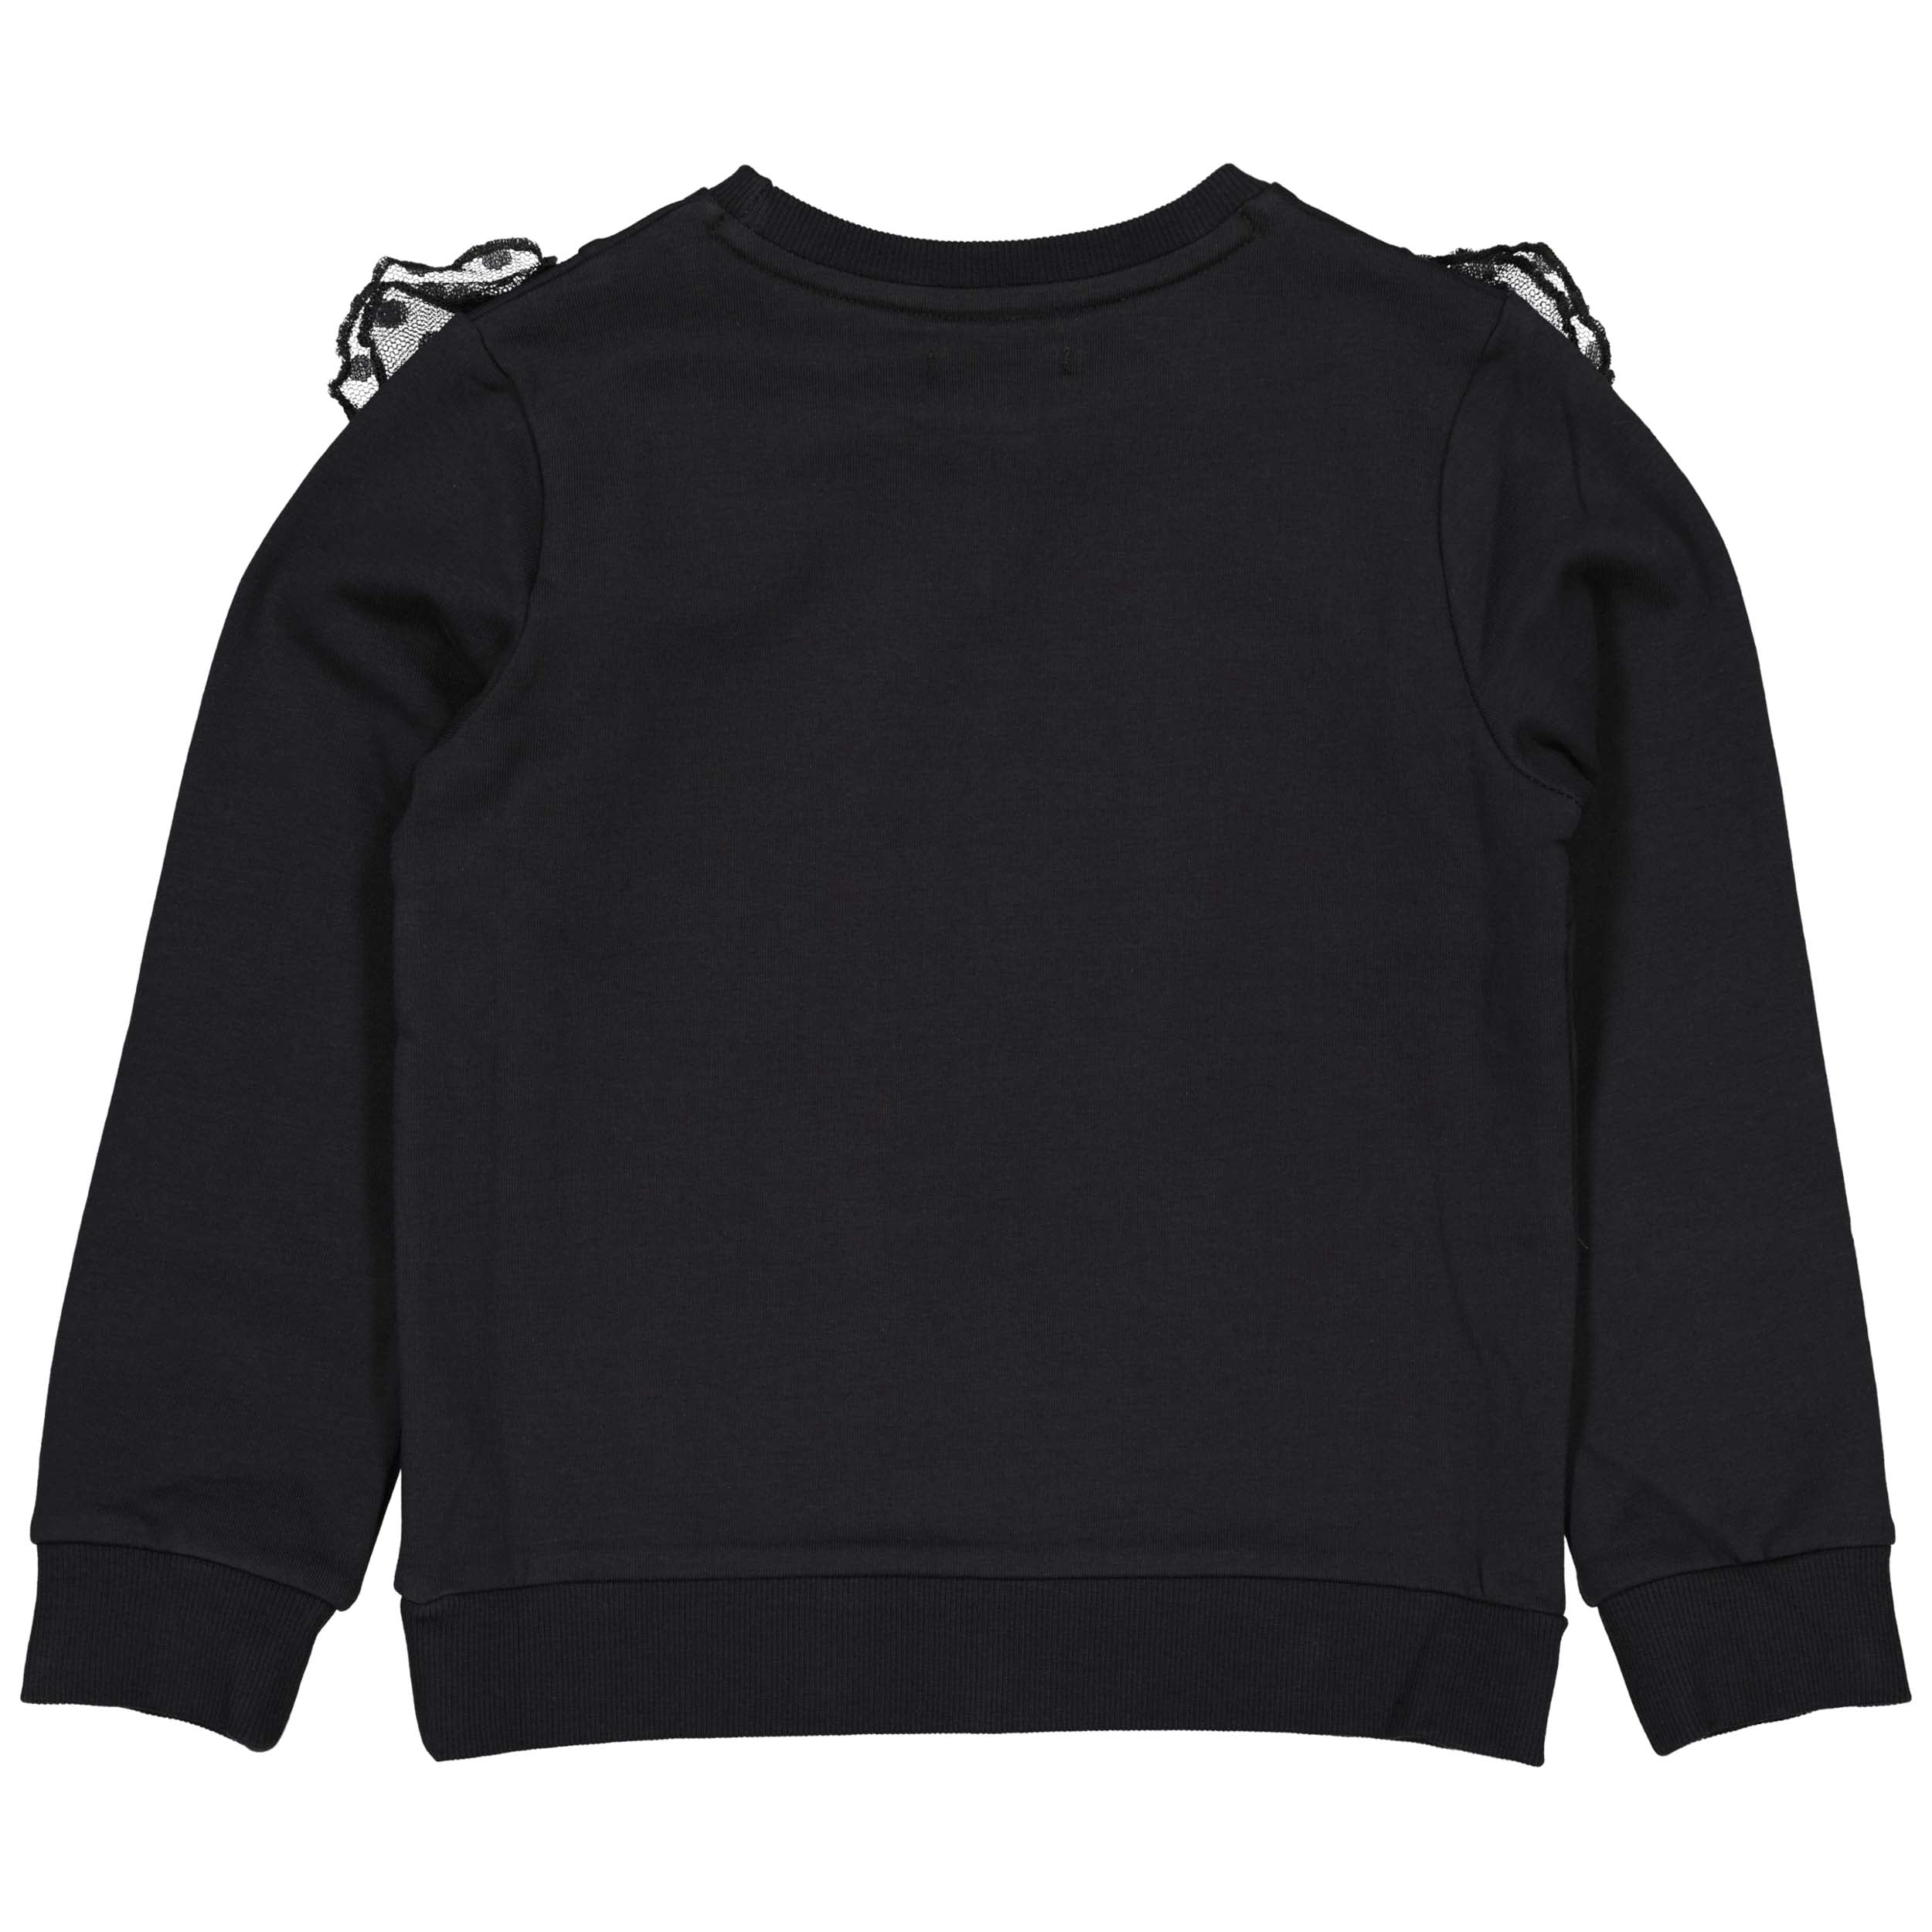 Meisjes Sweater BIJOUW221 van Little Levv in de kleur Grey Metal in maat 128.